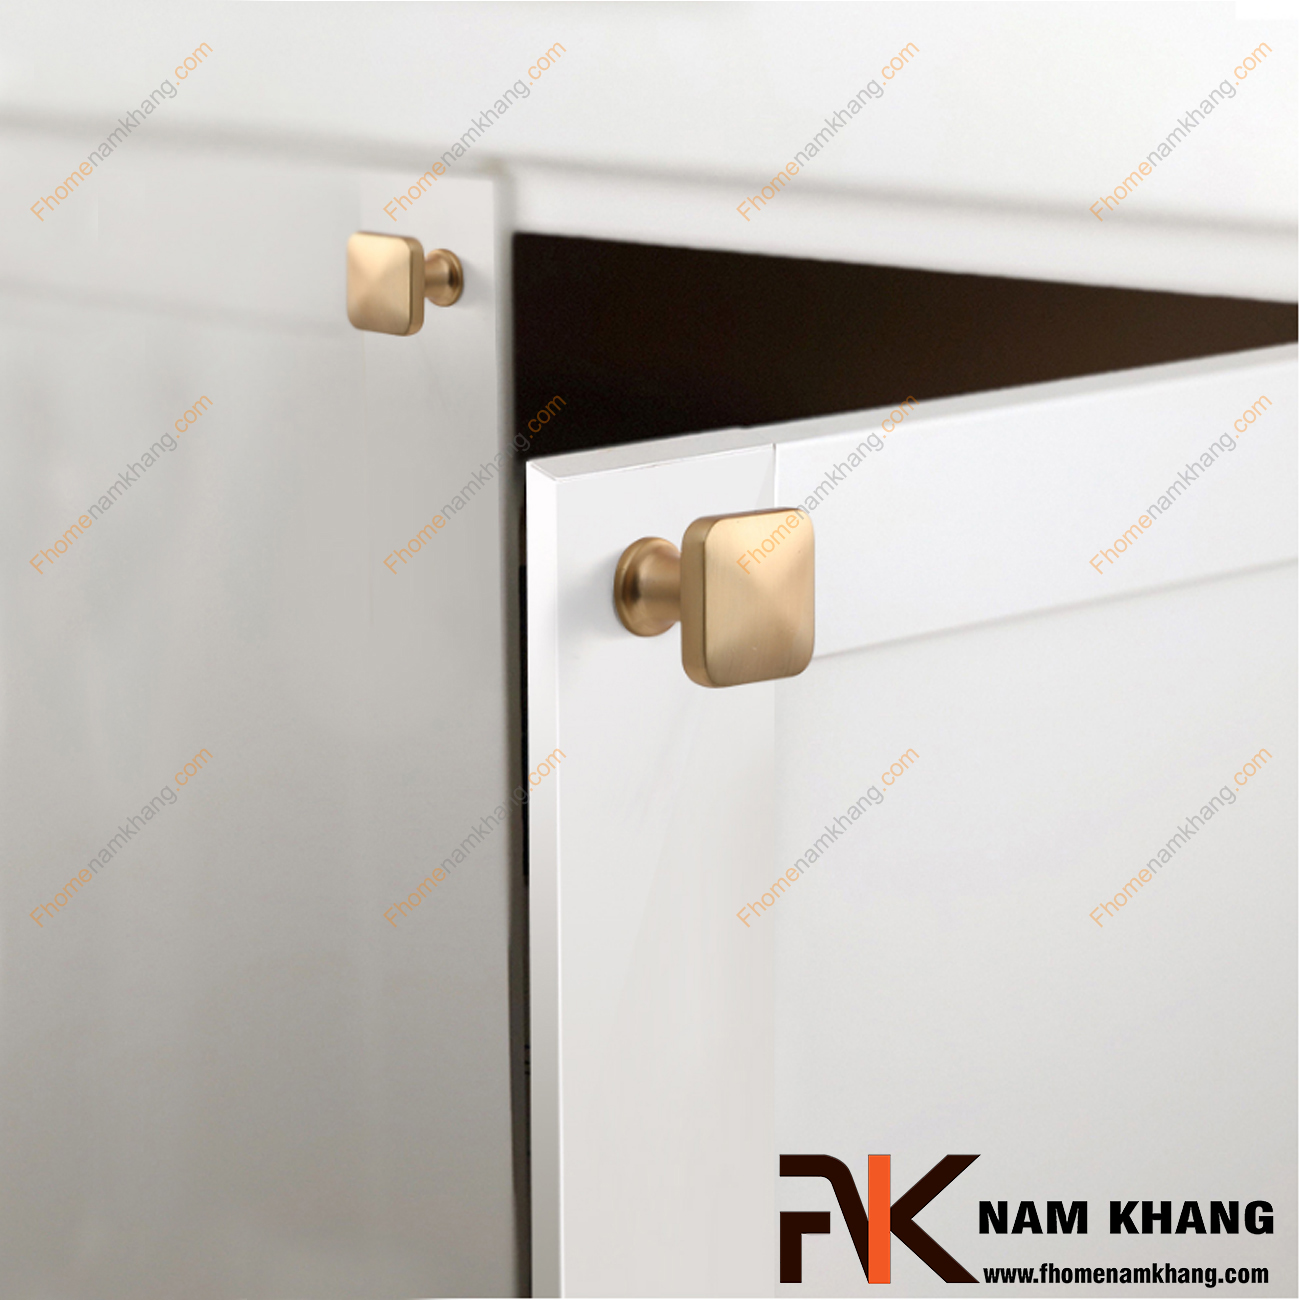 Núm cửa tủ dạng vuông màu vàng mờ NK169-VM có thiết kế đơn giản từ hợp kim cao cấp với khuôn dạng đầu vuông và đế tròn đứng.